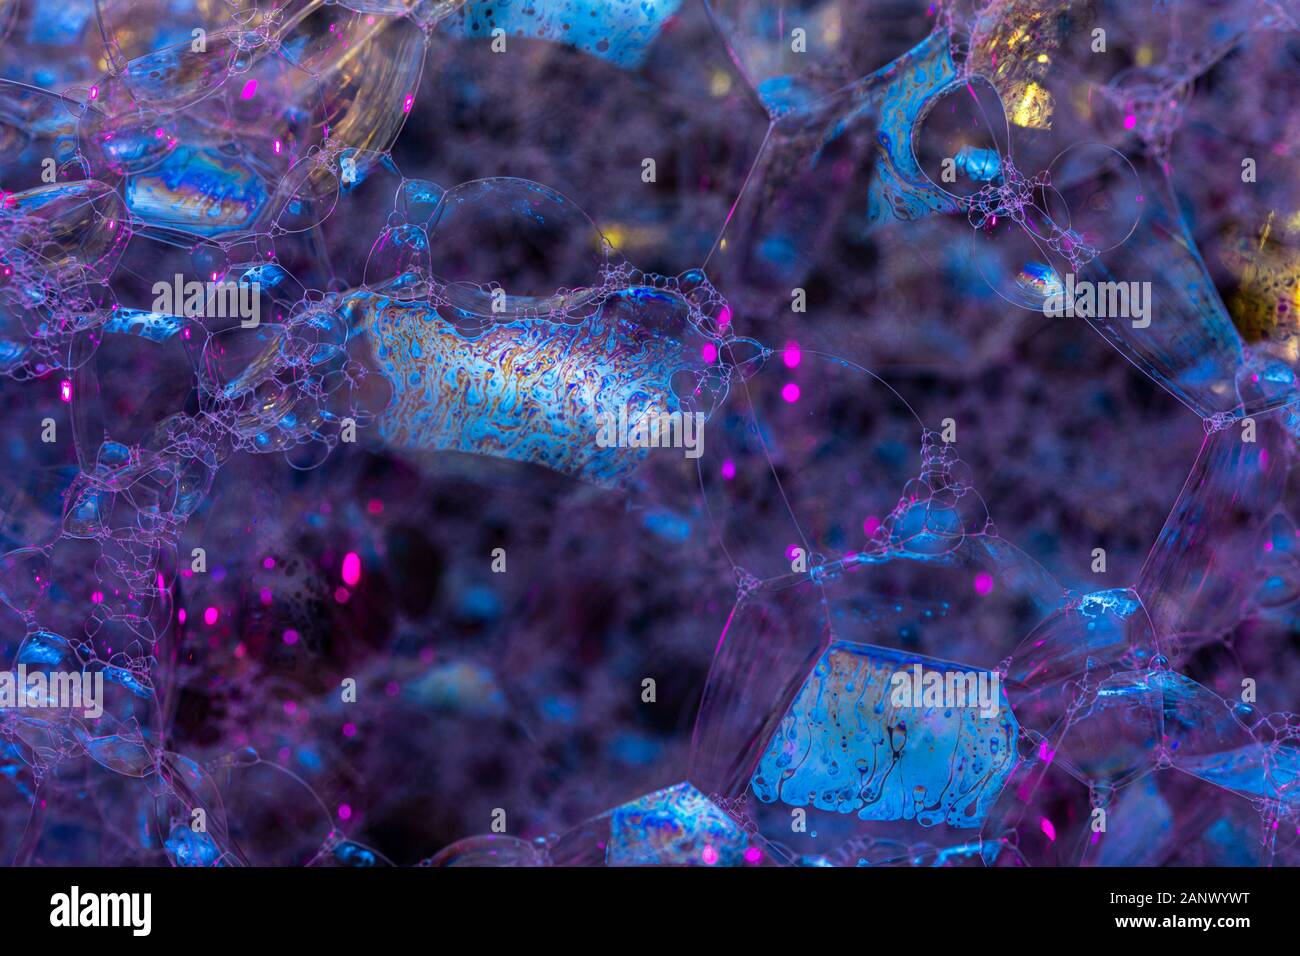 Kreative Zusammenfassung Hintergrund der Kette von Bläschen Struktur in Dunkelblau - magenta Töne Stockfoto